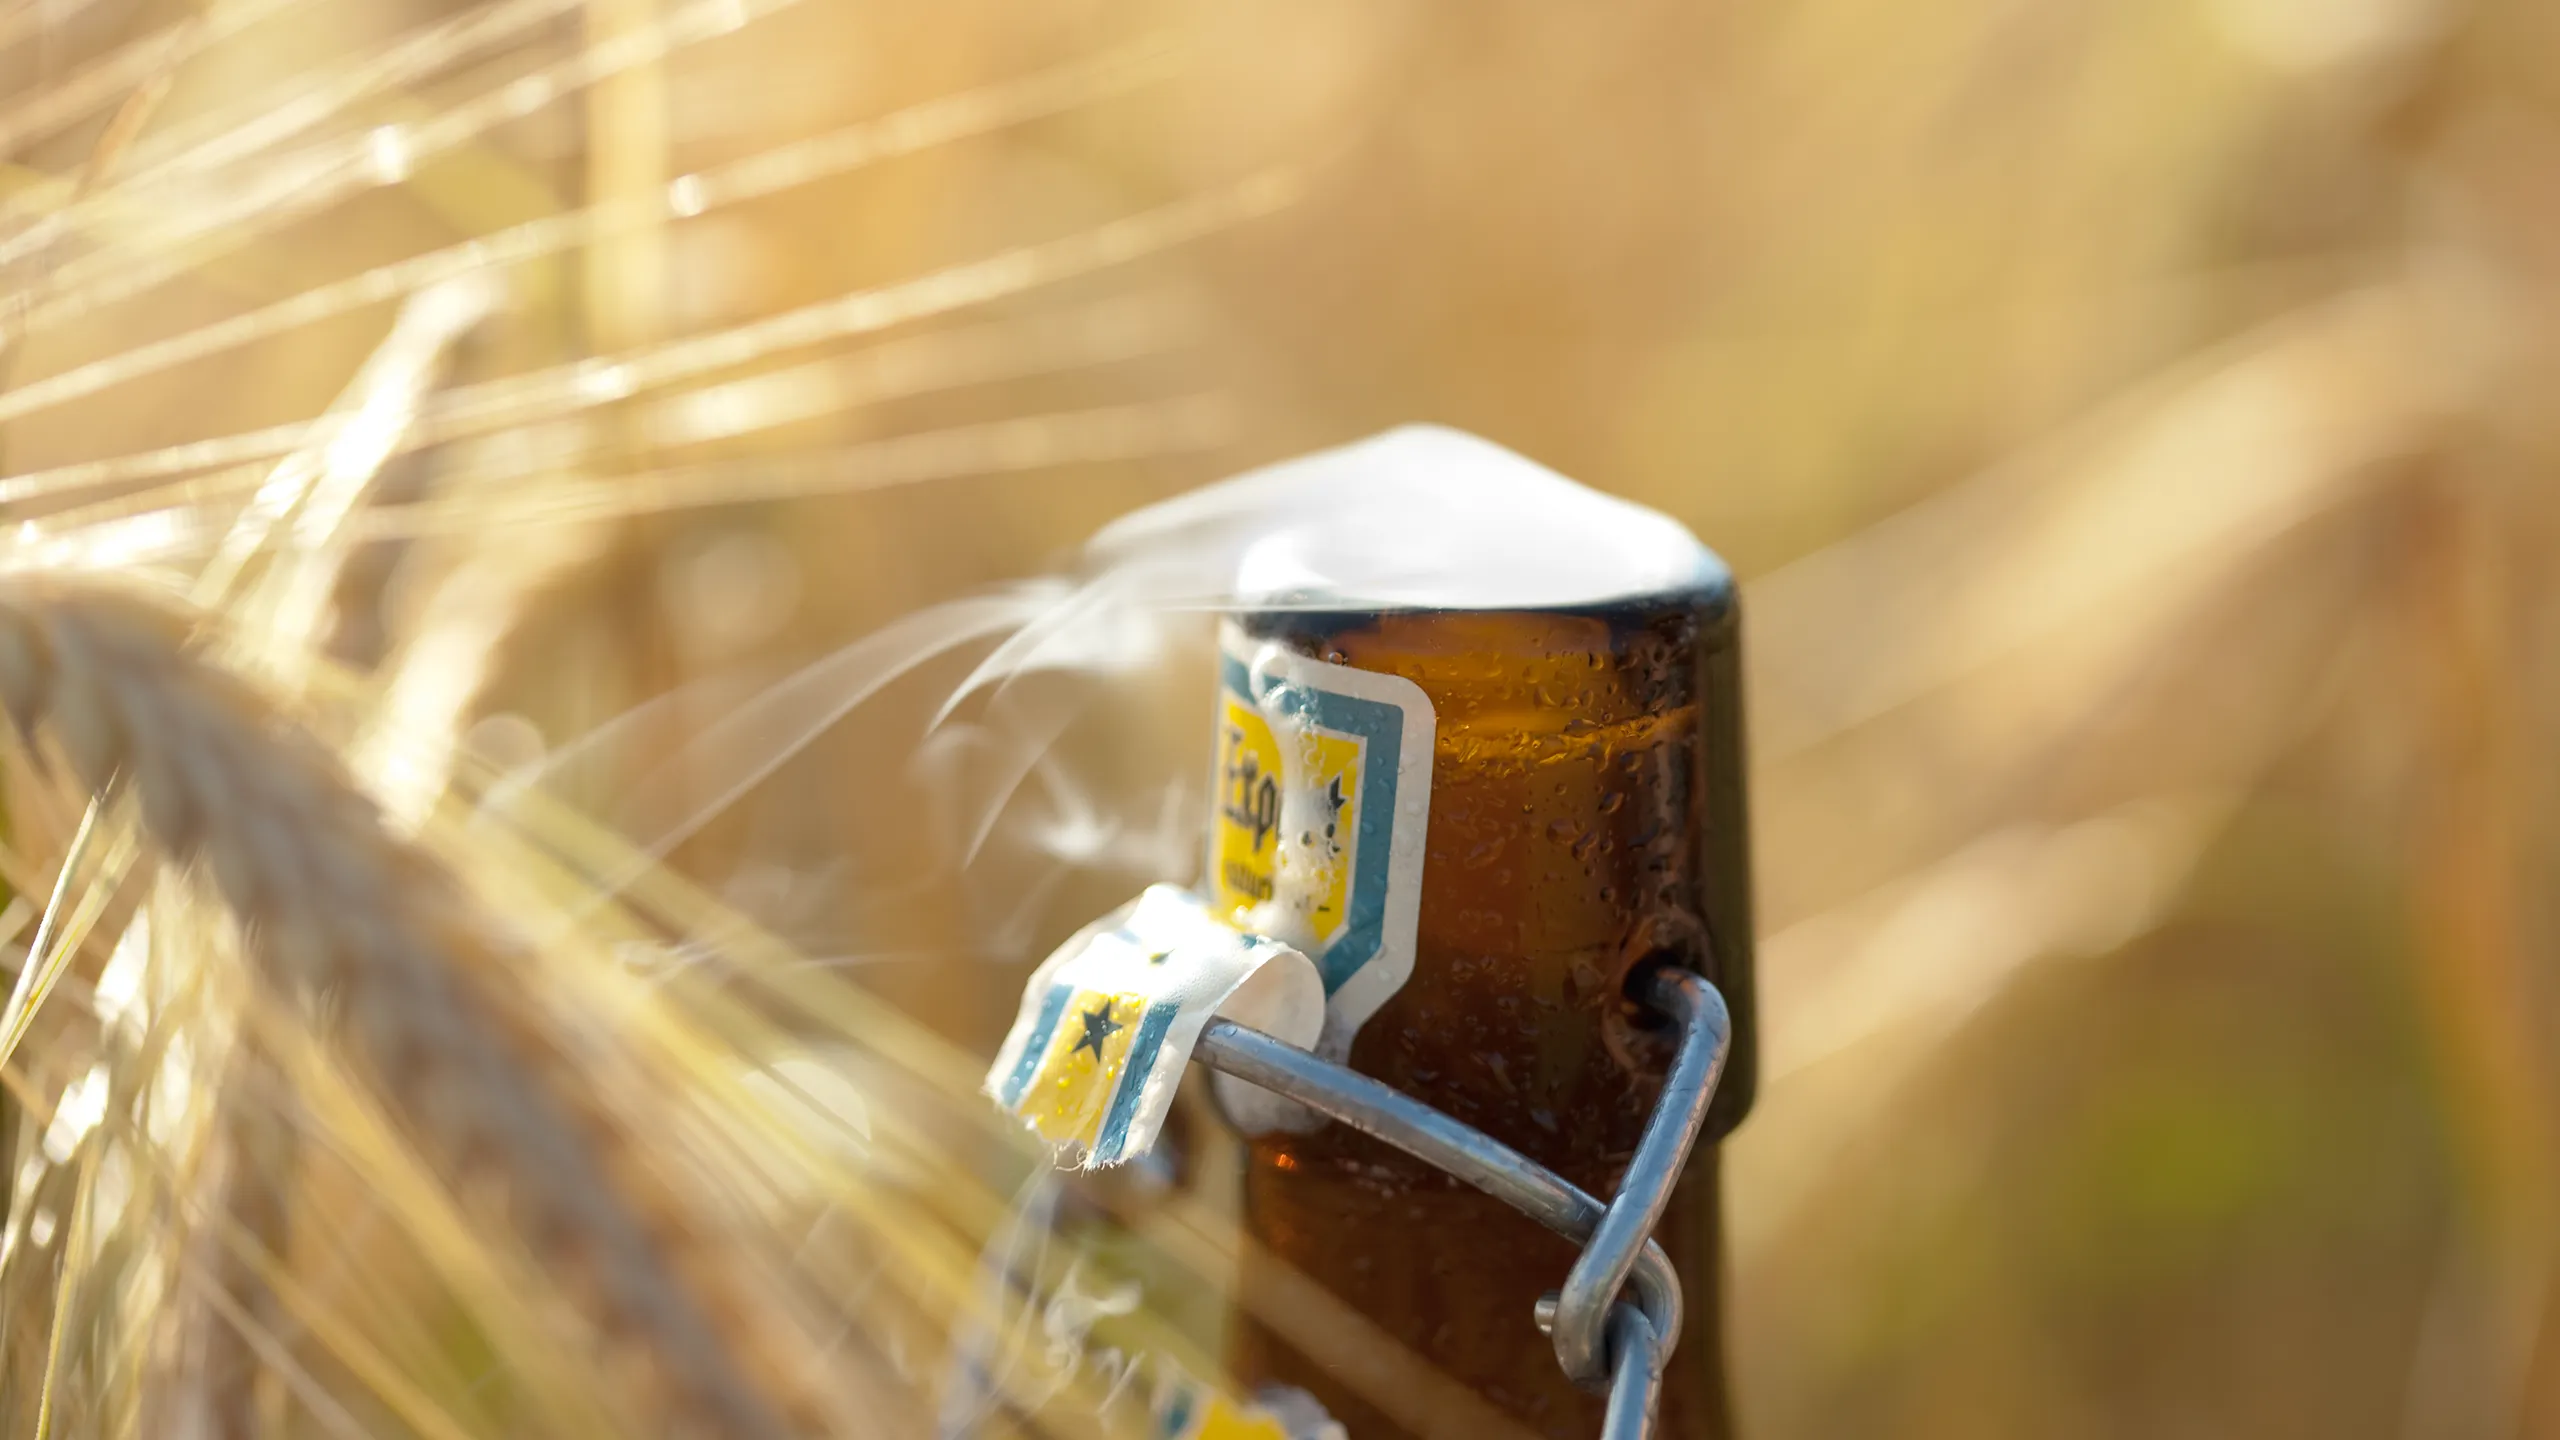 Frisch geöffnetes Bier der Brauerei Zoller-Hof auf Weizenfeld, Titelbild zu Aktuelles